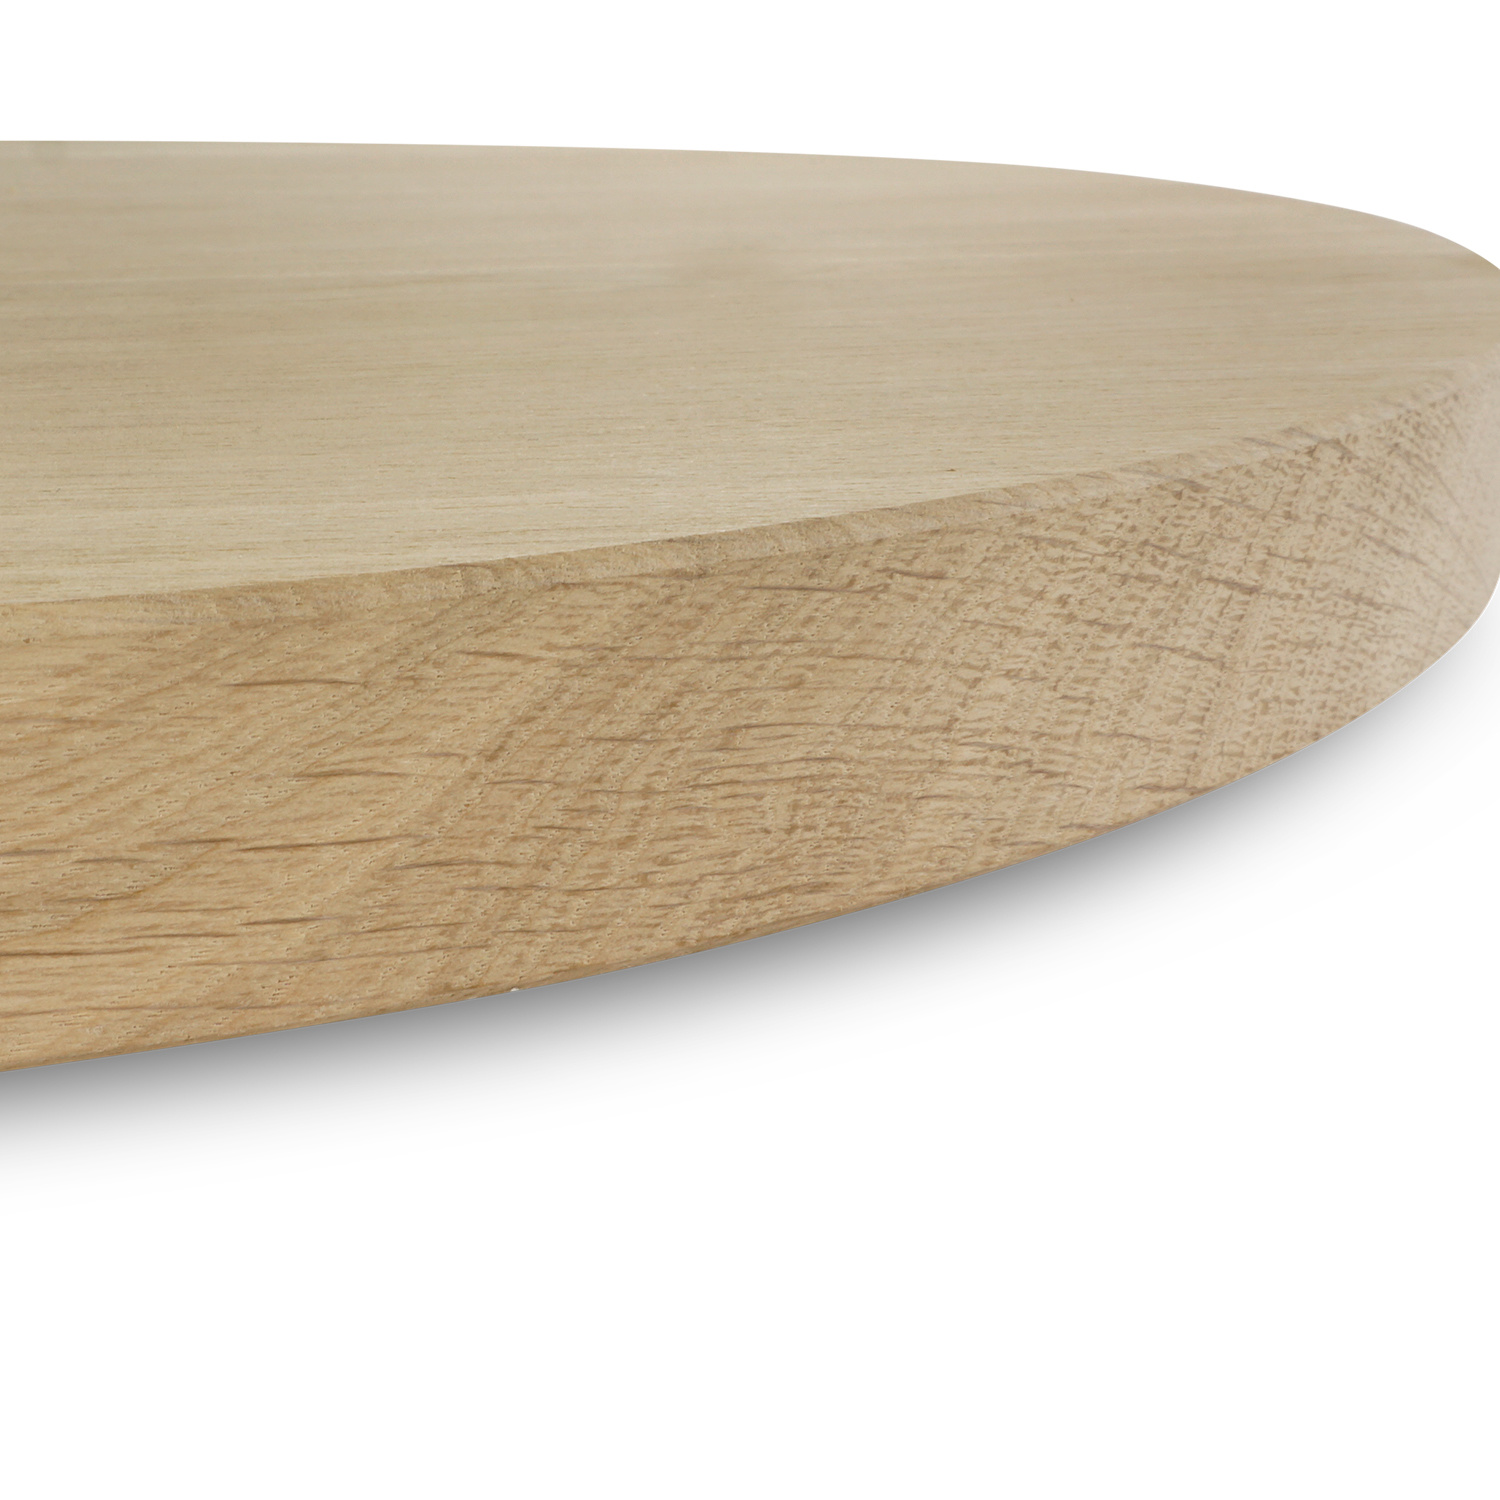  Rond eiken tafelblad op maat - 2 cm dik (1-laag) - Foutvrij Europees eikenhout - verlijmd kd 8-12% - diameter van 30 tot 180 cm